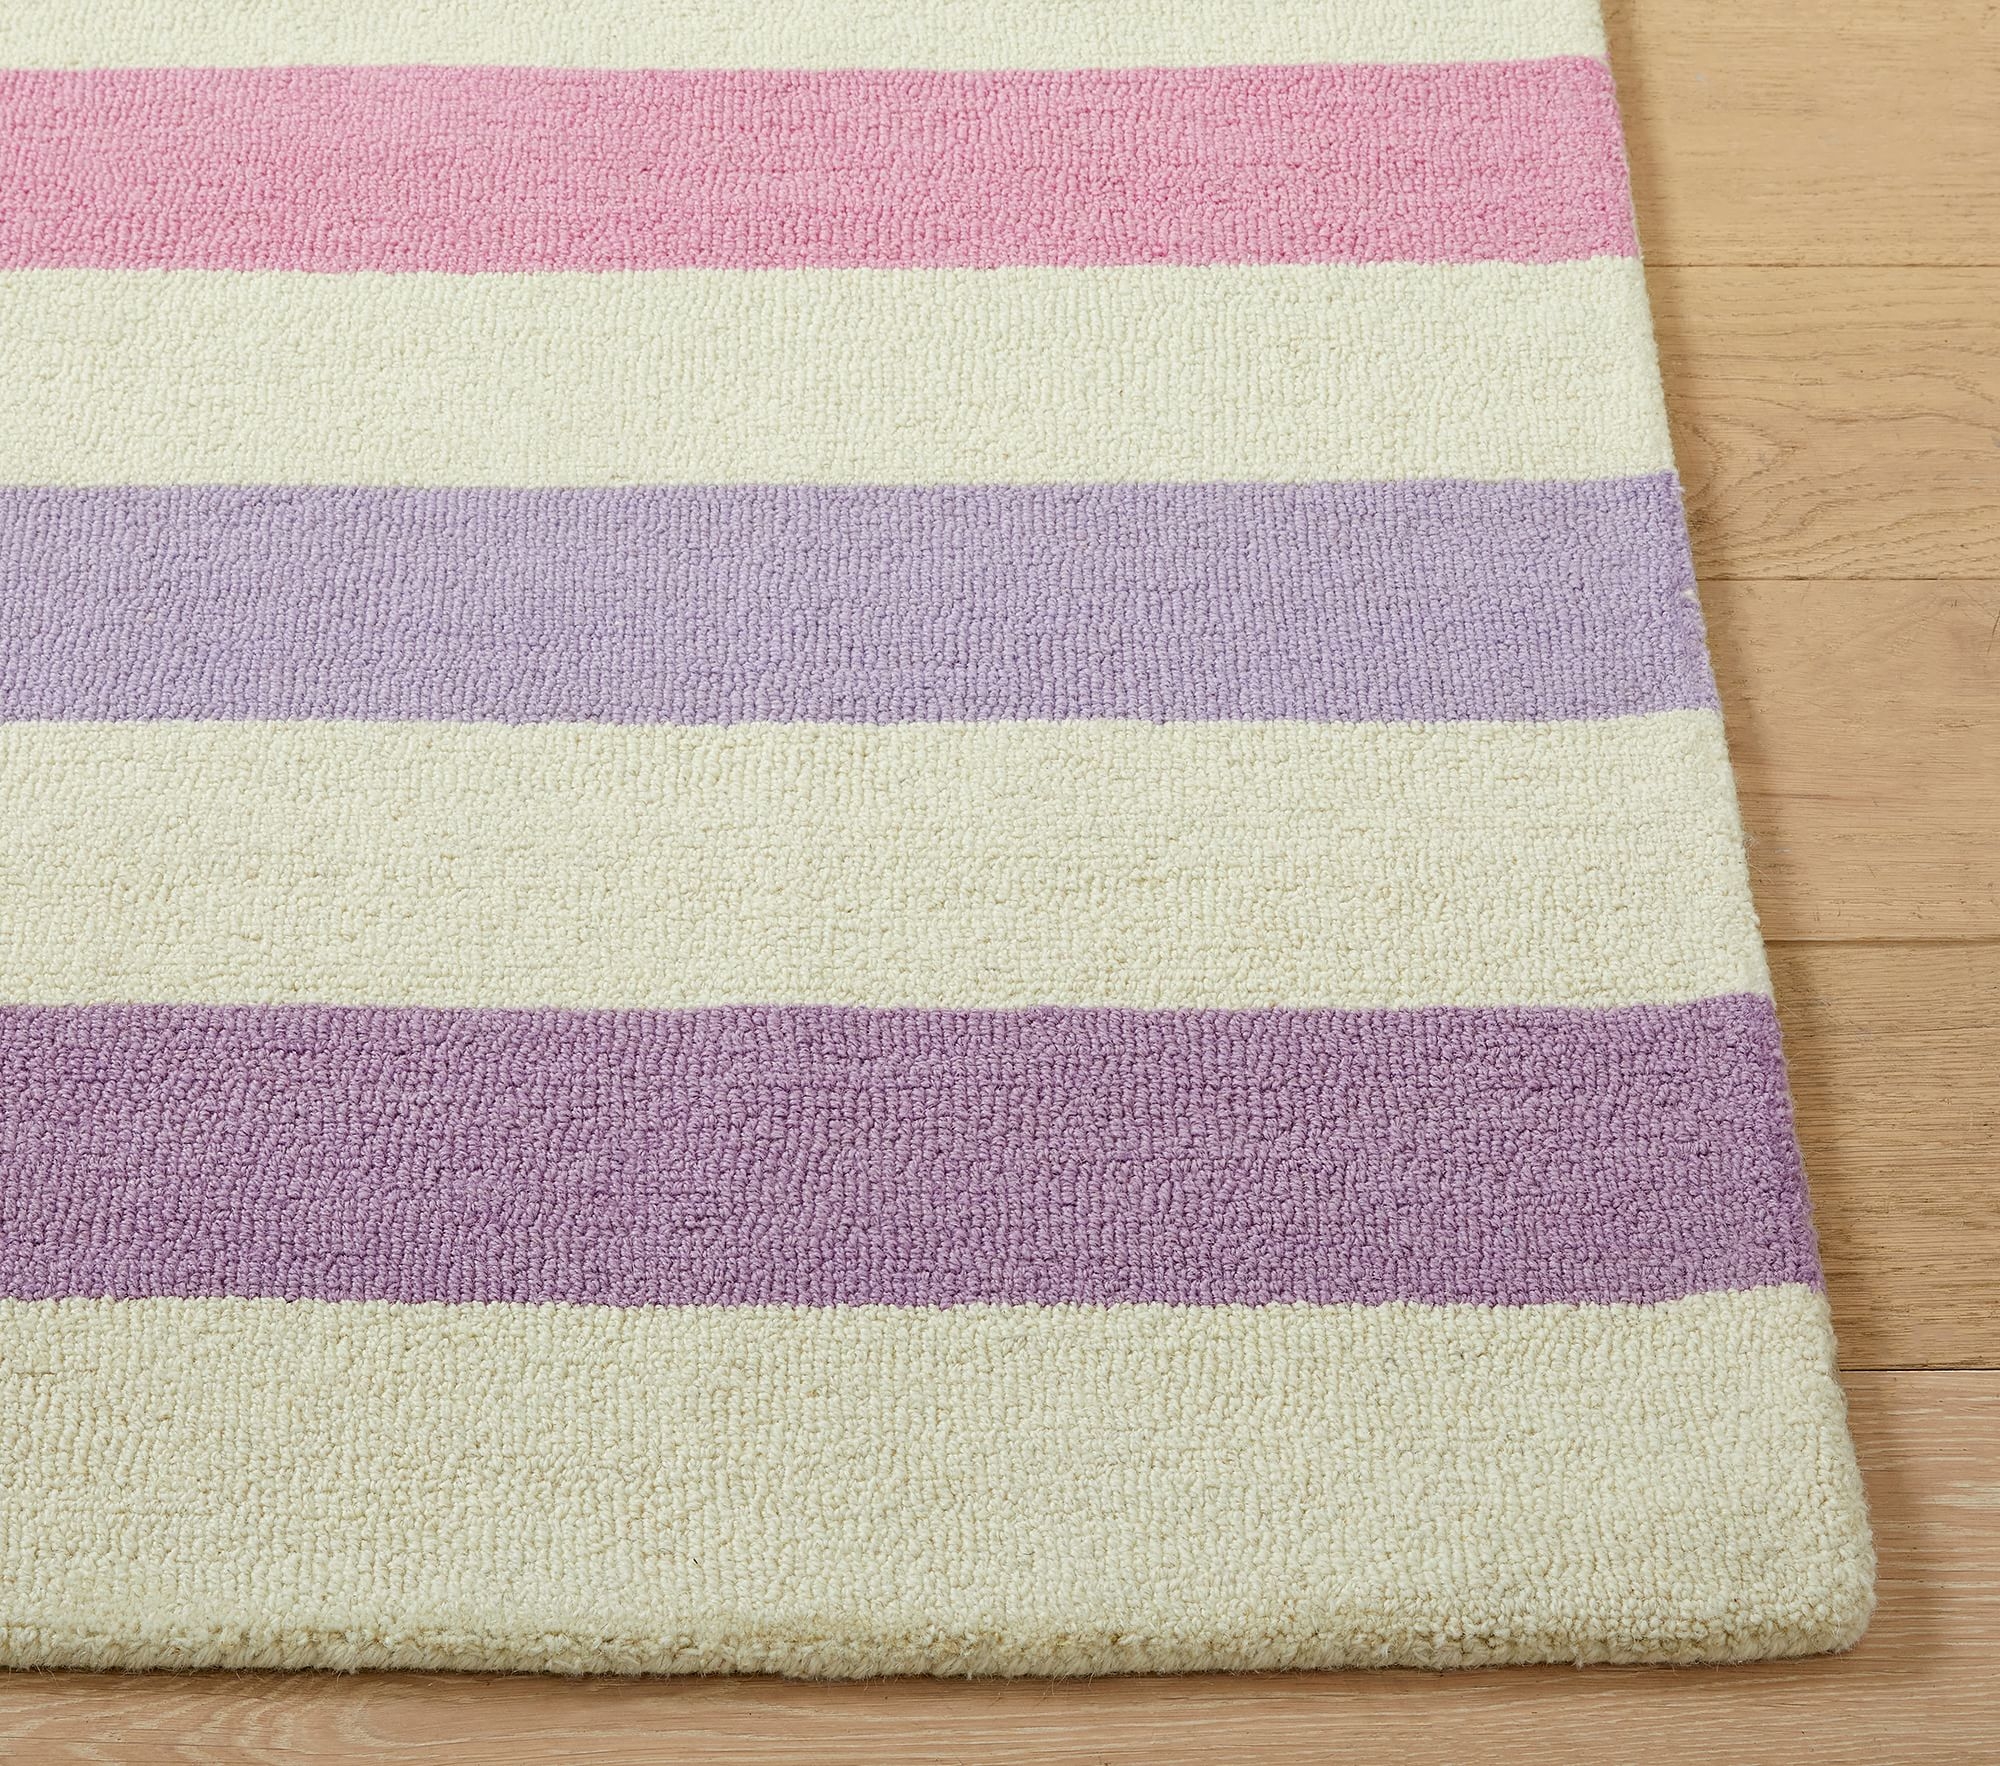 Kayla Rainbow Stripe Rug, 7x10', Pink Multi - Image 2